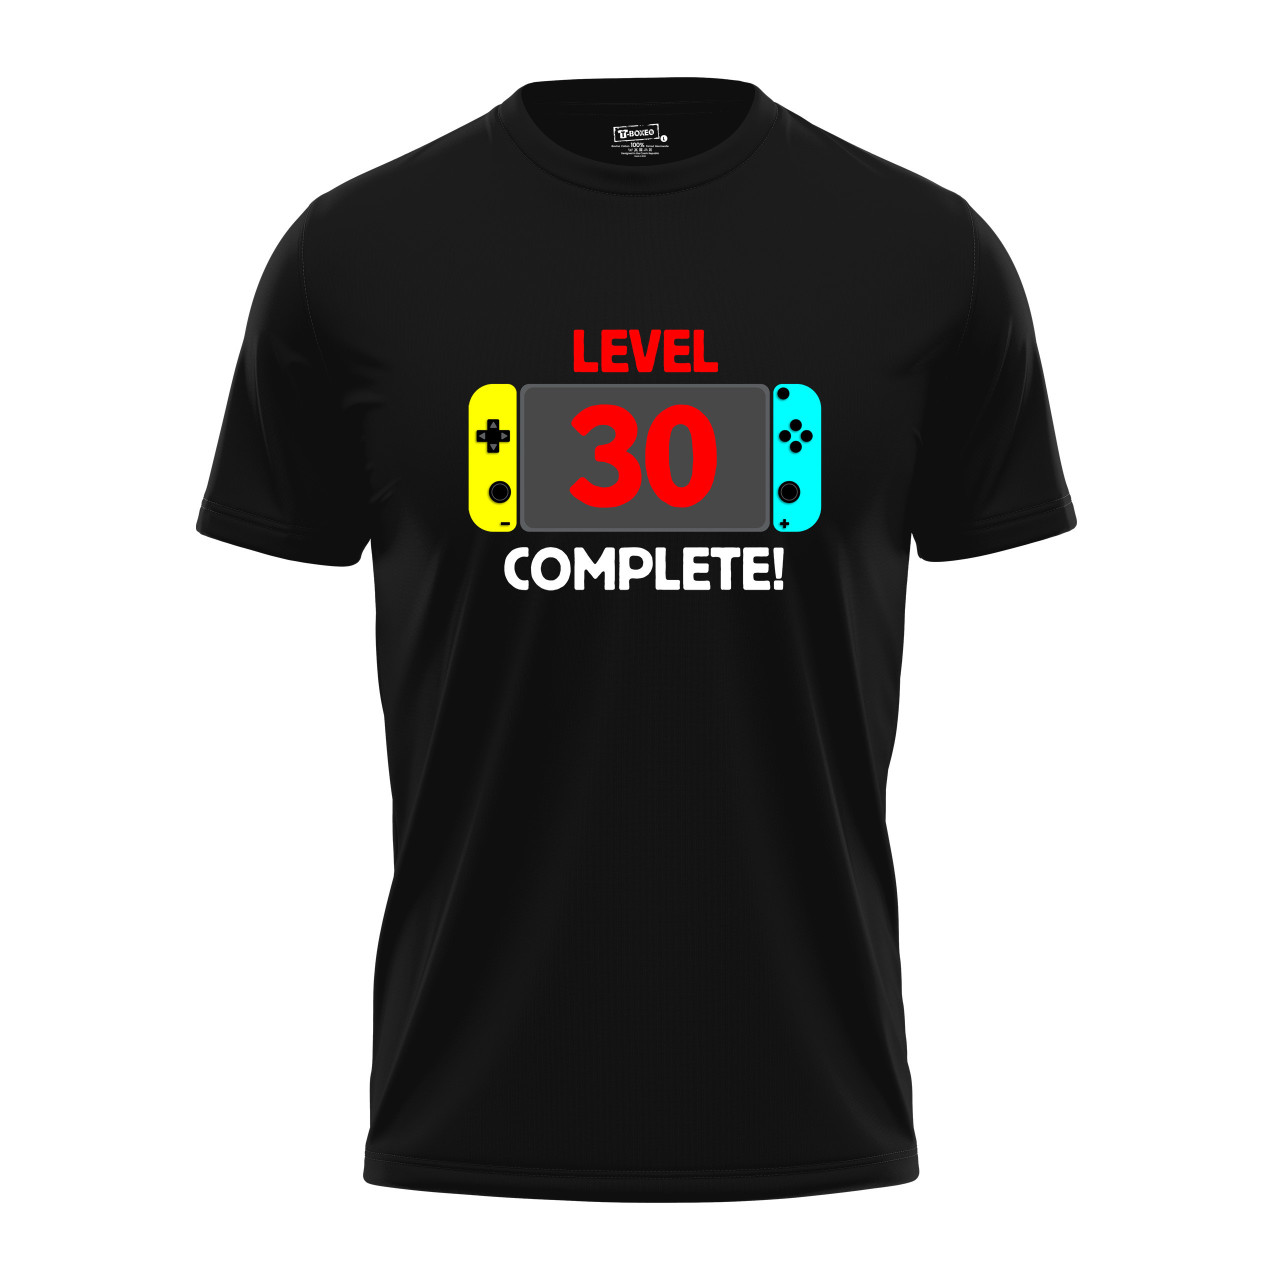 Pánské tričko s potiskem “Level complete” s věkem